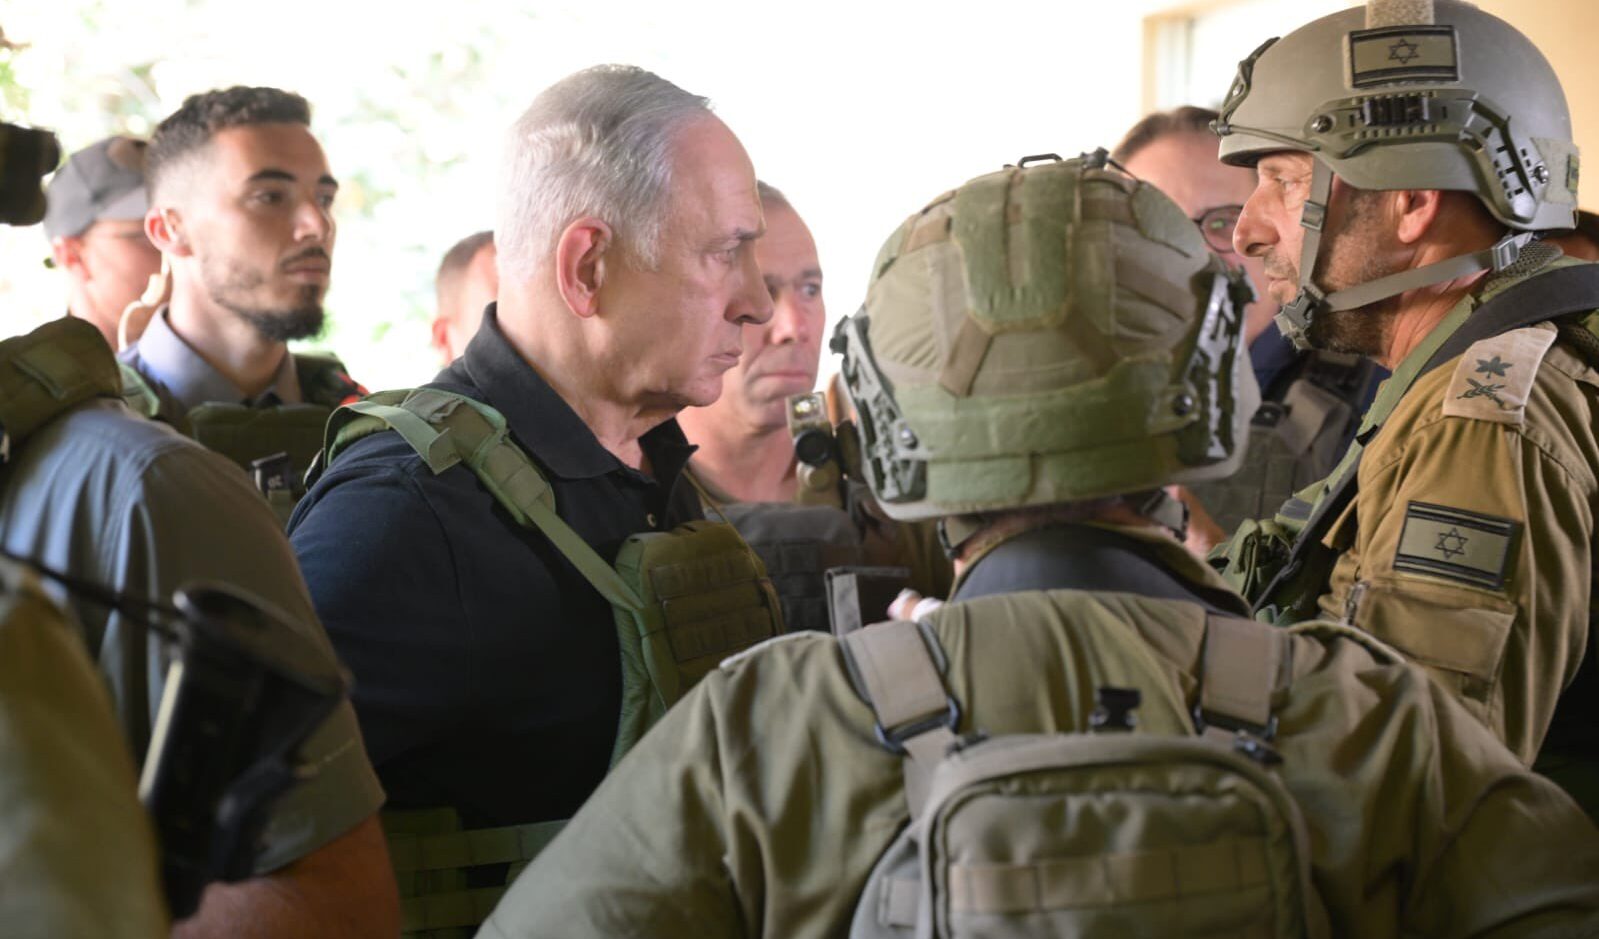 Senza strategia, solo propaganda: povero Israele in mano a un irresponsabile Netanyahu